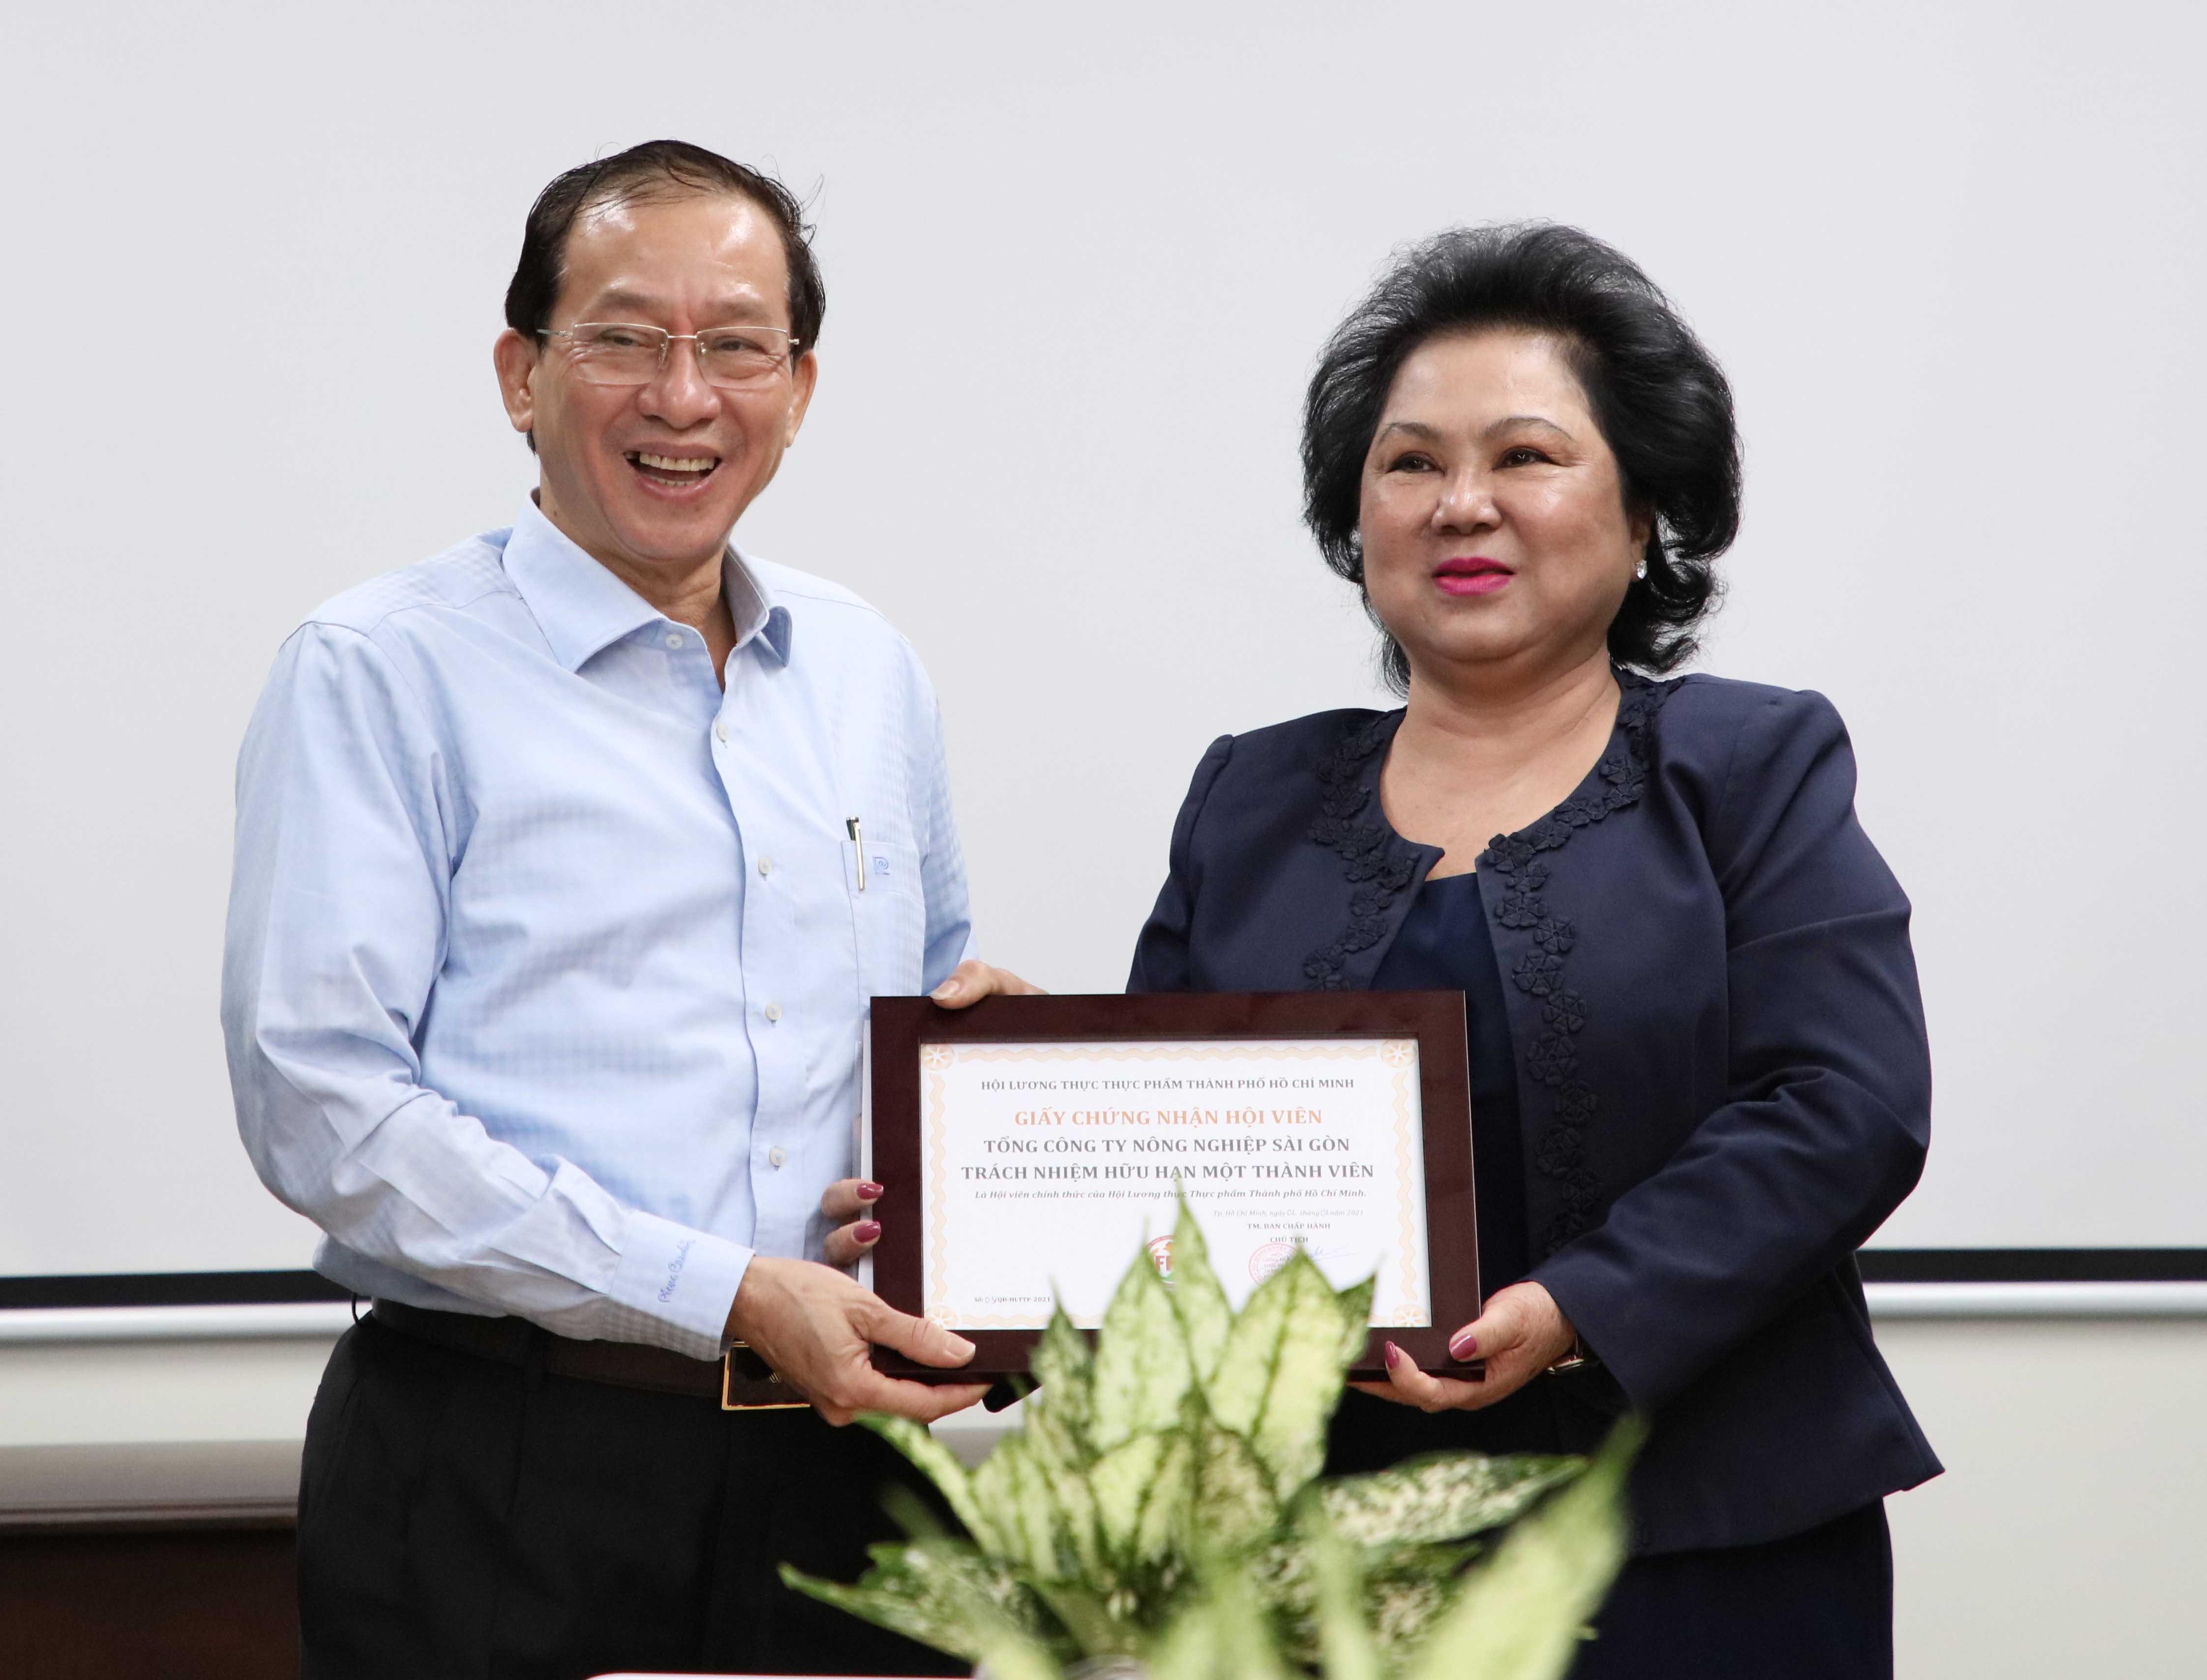 Tổng Công ty Nông nghiệp Sài Gòn TNHH Một thành viên trở thành thành viên của Hội Lương thực Thực phẩm TPHCM